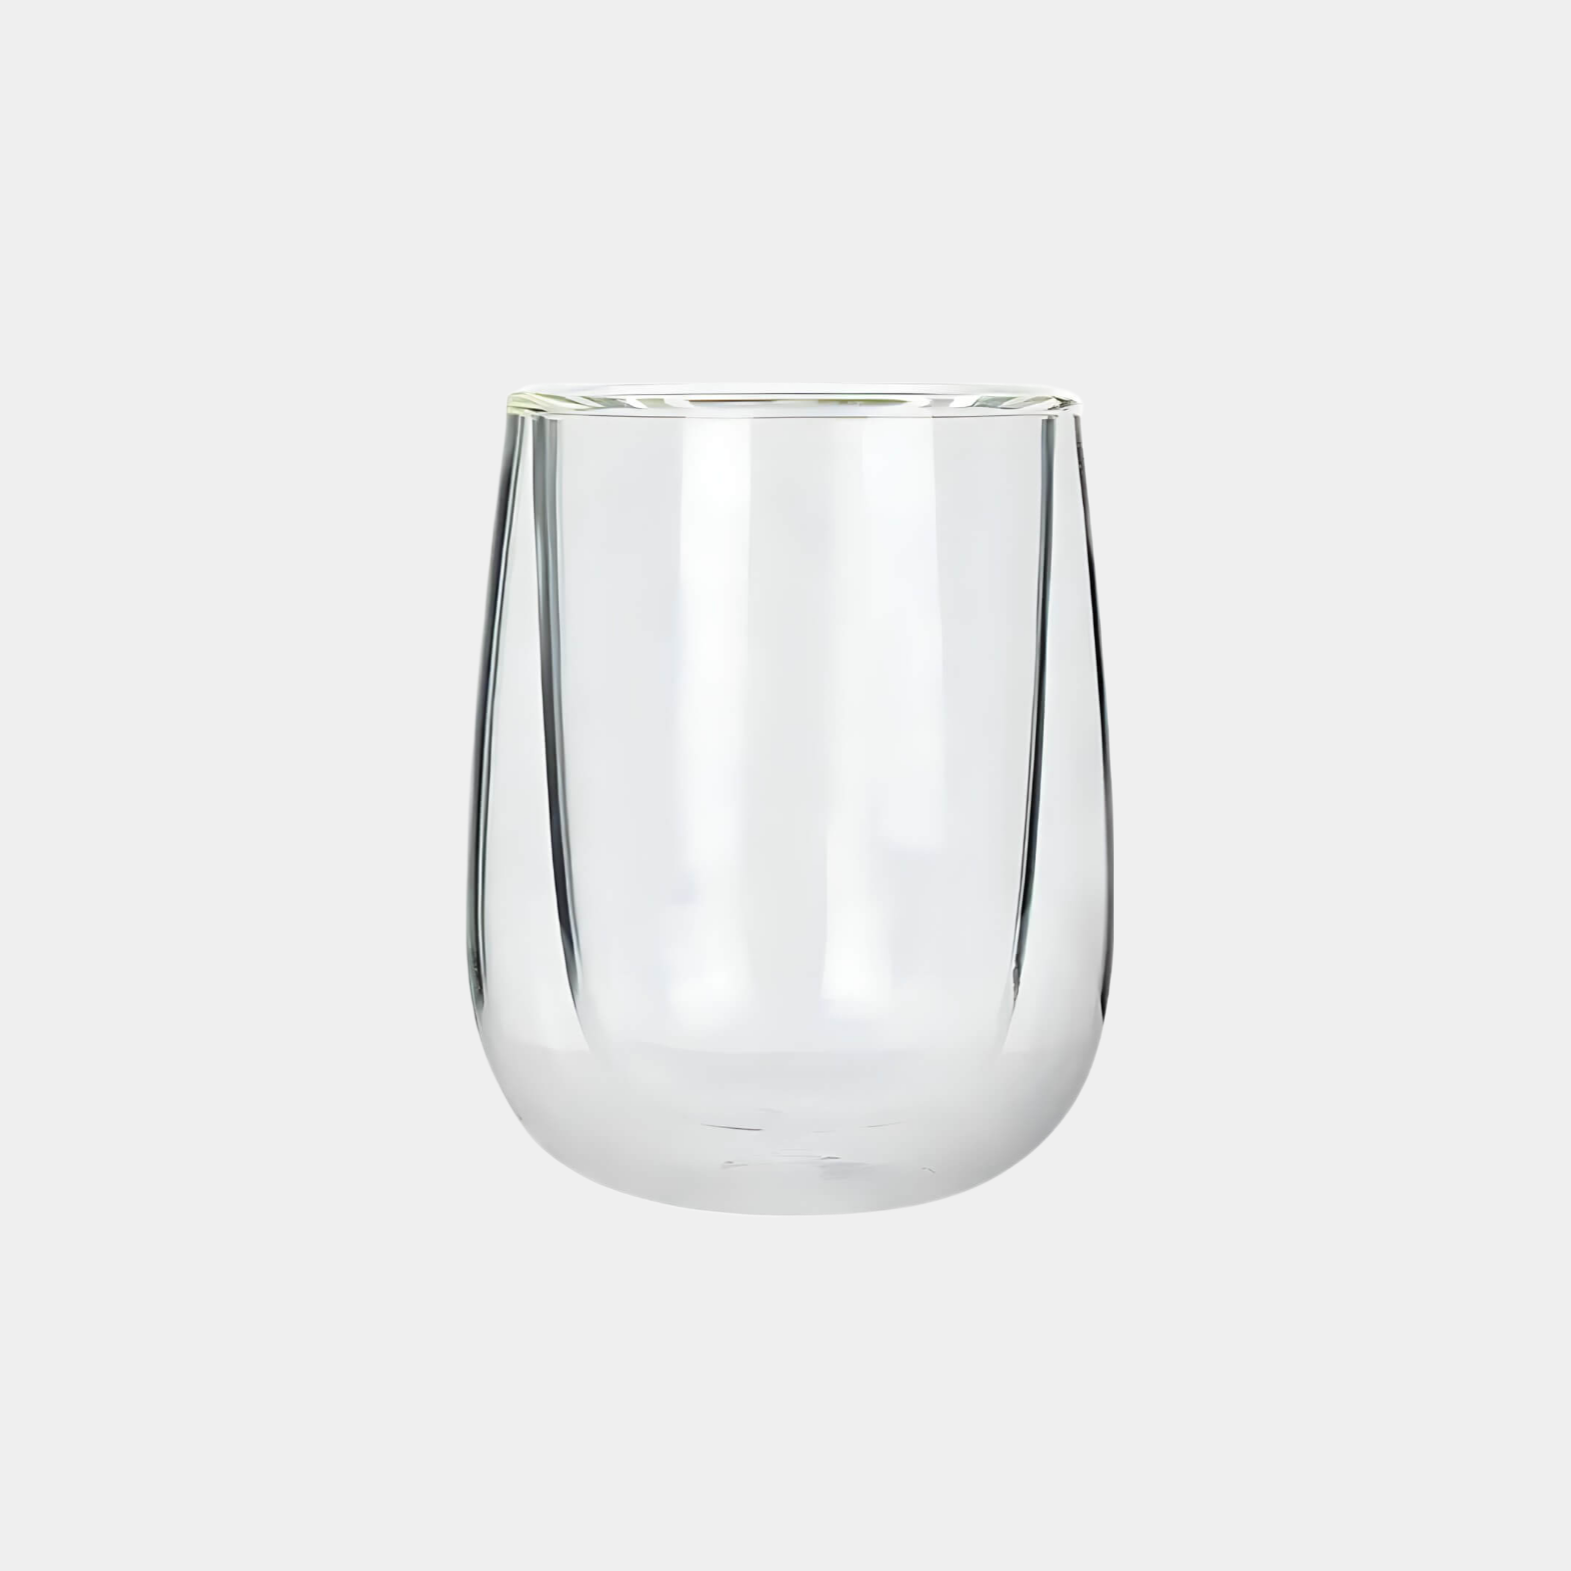 Auf diesem Bild sieht man unser Double Wall Glas 250ml. Das Glas hält Getränke länger Kalt oder Warm und ist optisch ein Hingucker. Es ist elegant und ästhetisch.